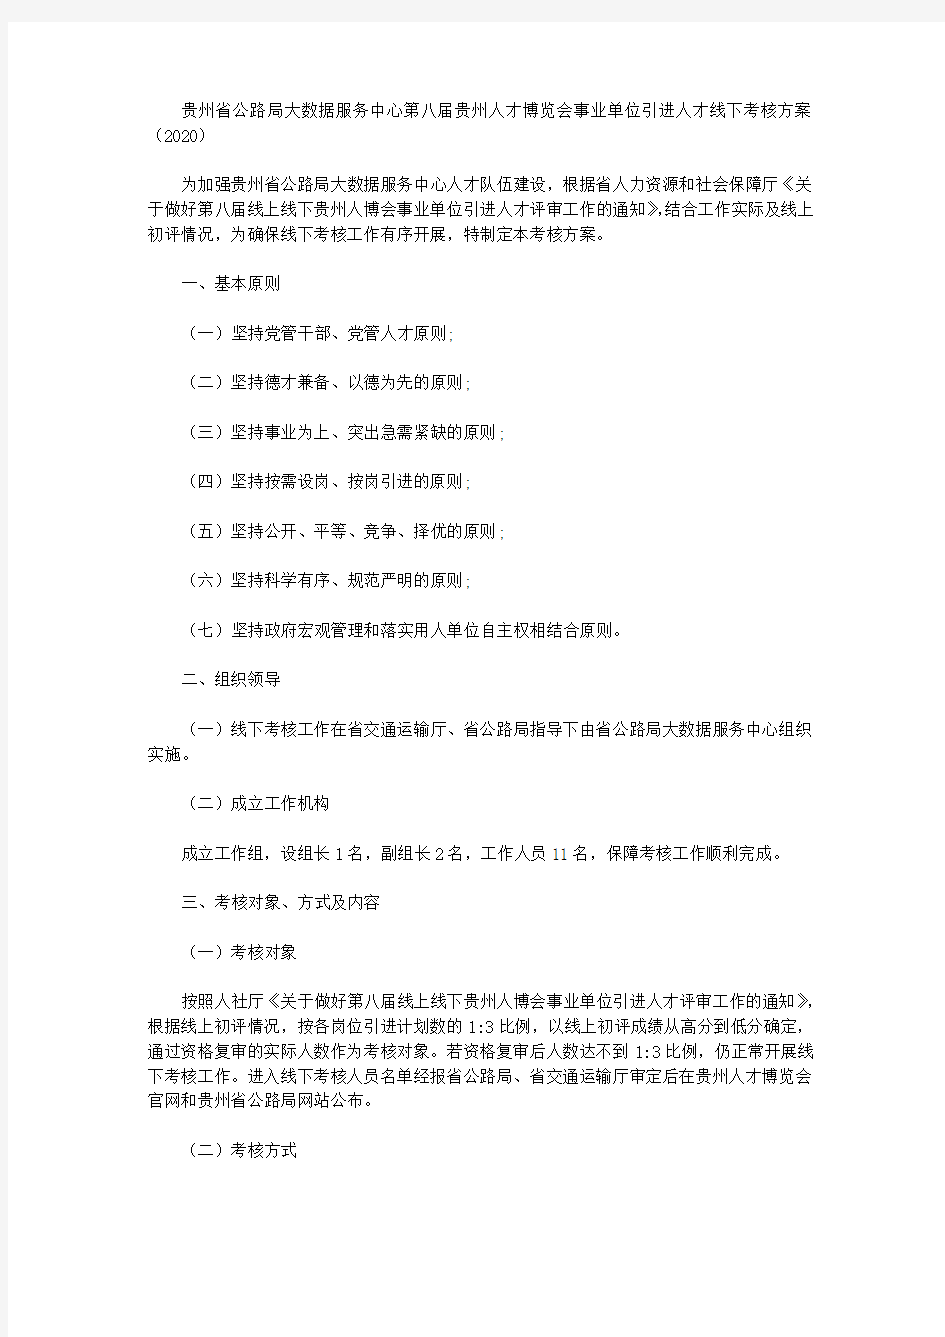 贵州省公路局大数据服务中心第八届贵州人才博览会事业单位引进人才线下考核方案(2020)